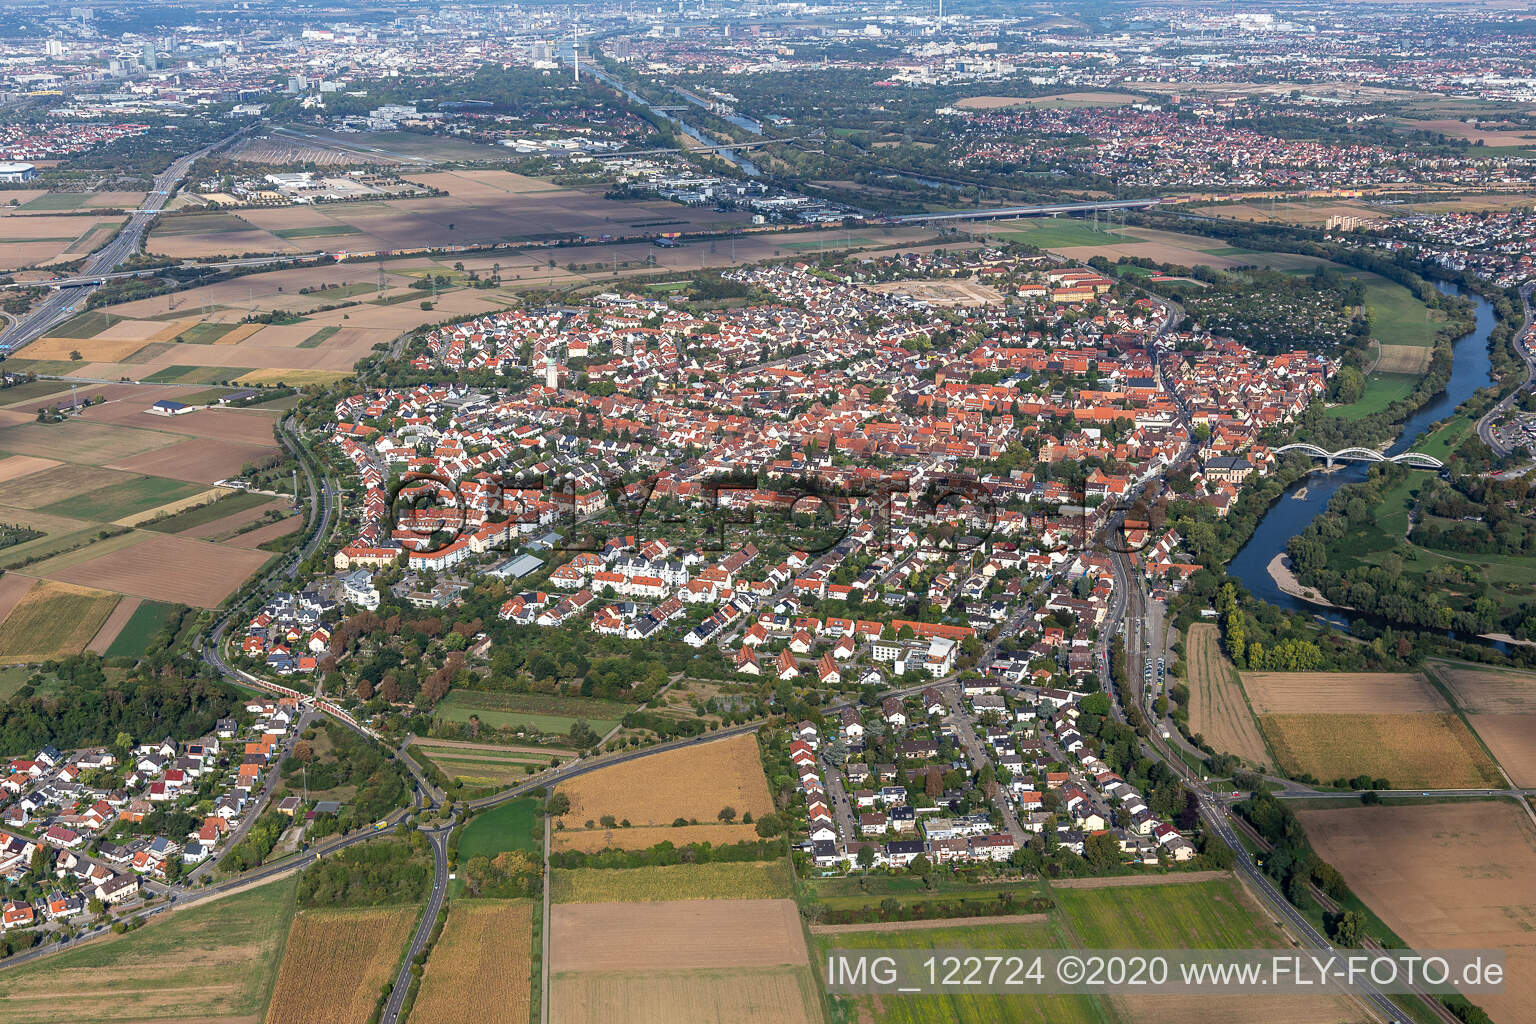 Luftbild von Ortskern Seckenheim am Uferbereich des Neckar - Flußverlaufes in Mannheim im Bundesland Baden-Württemberg, Deutschland